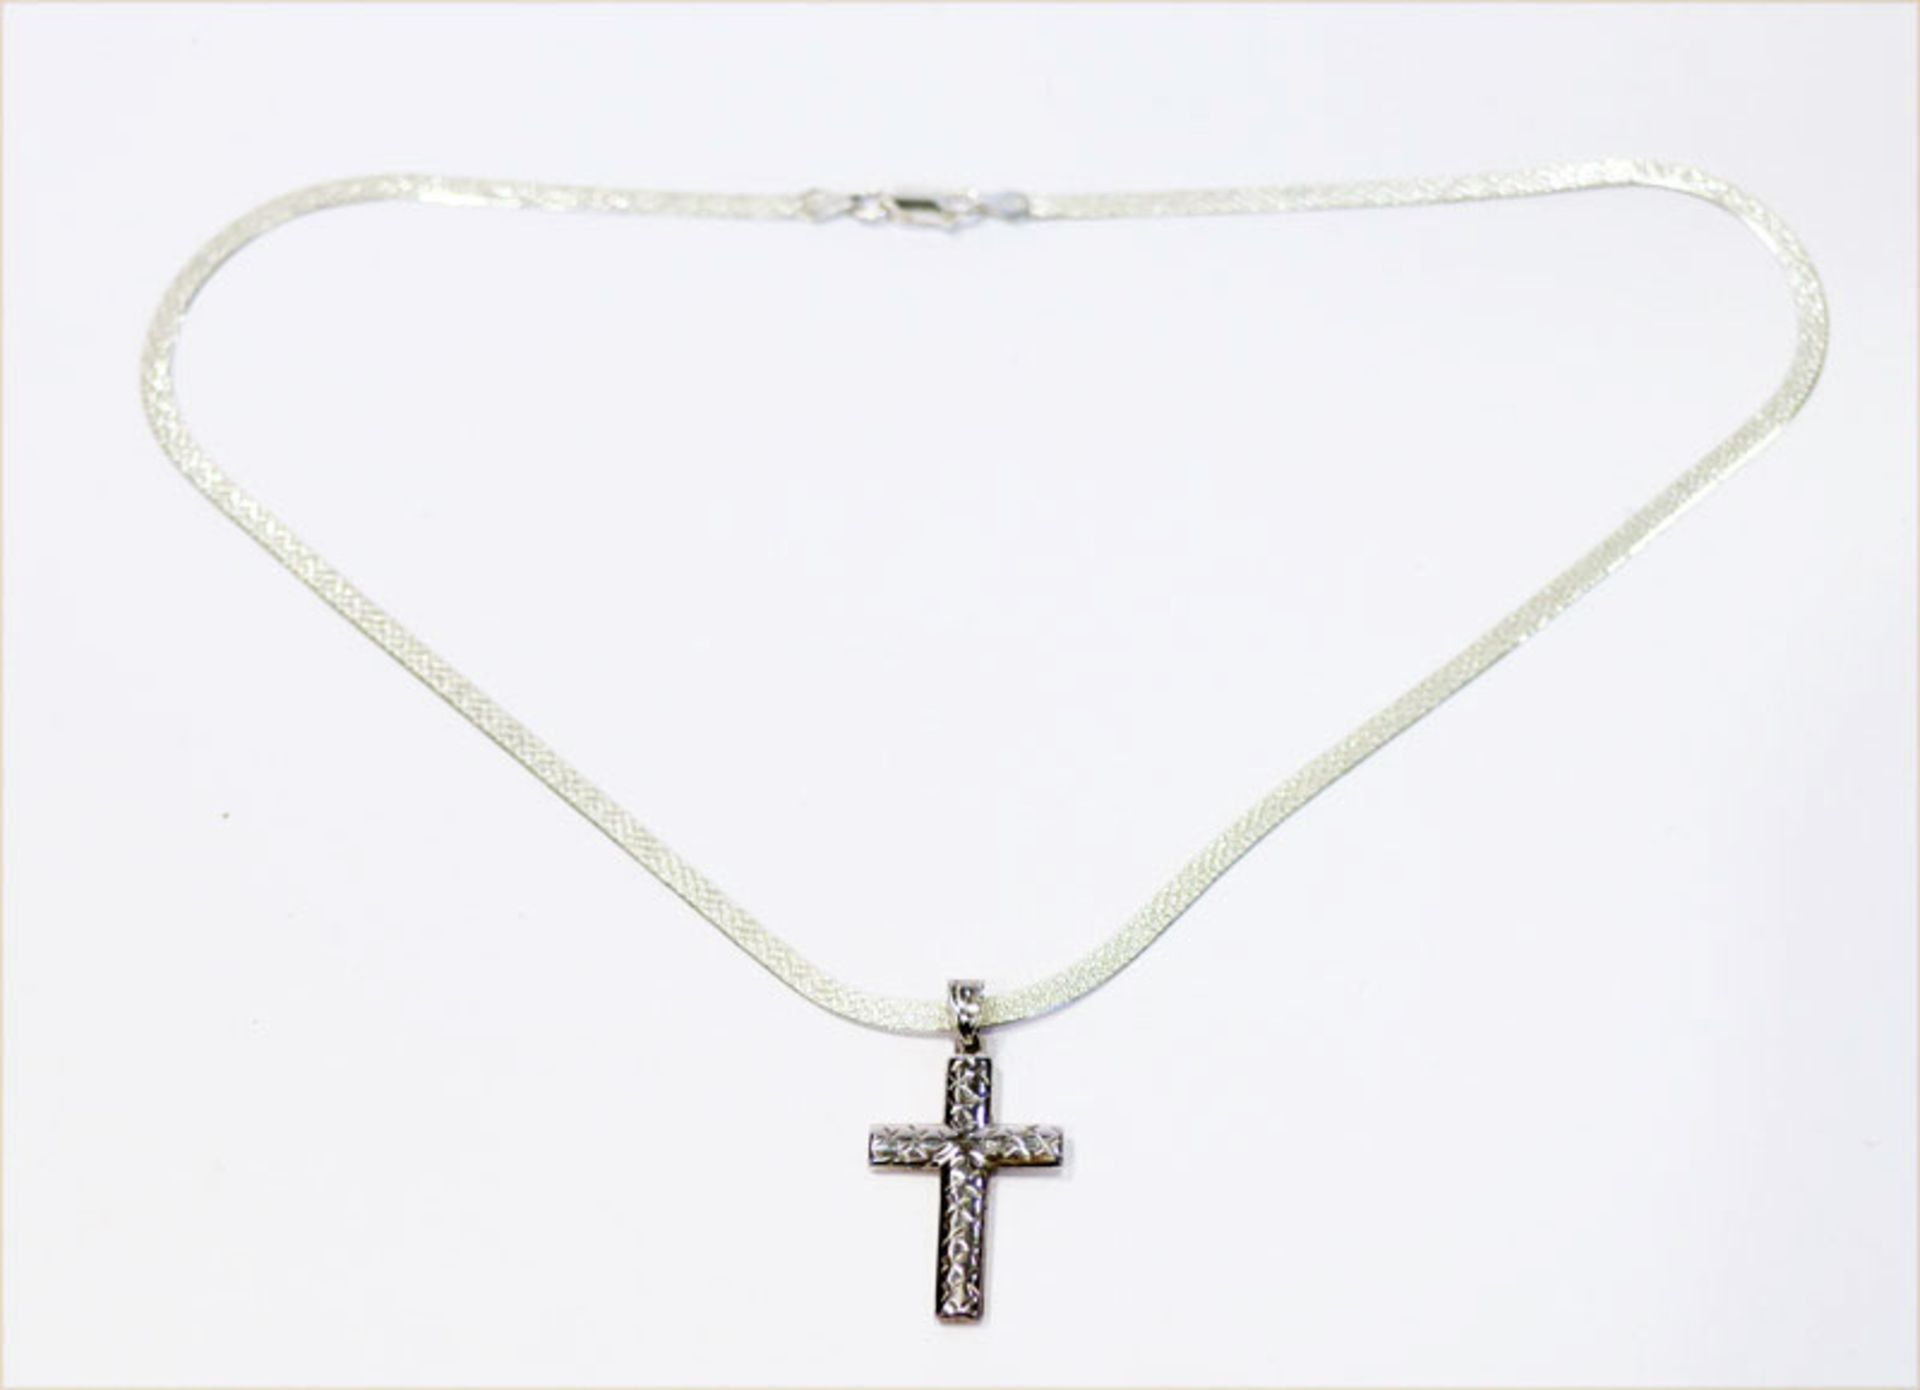 Silber Kette, L 44 cm mit Kreuz-Anhänger, L 3 cm, 8 gr.